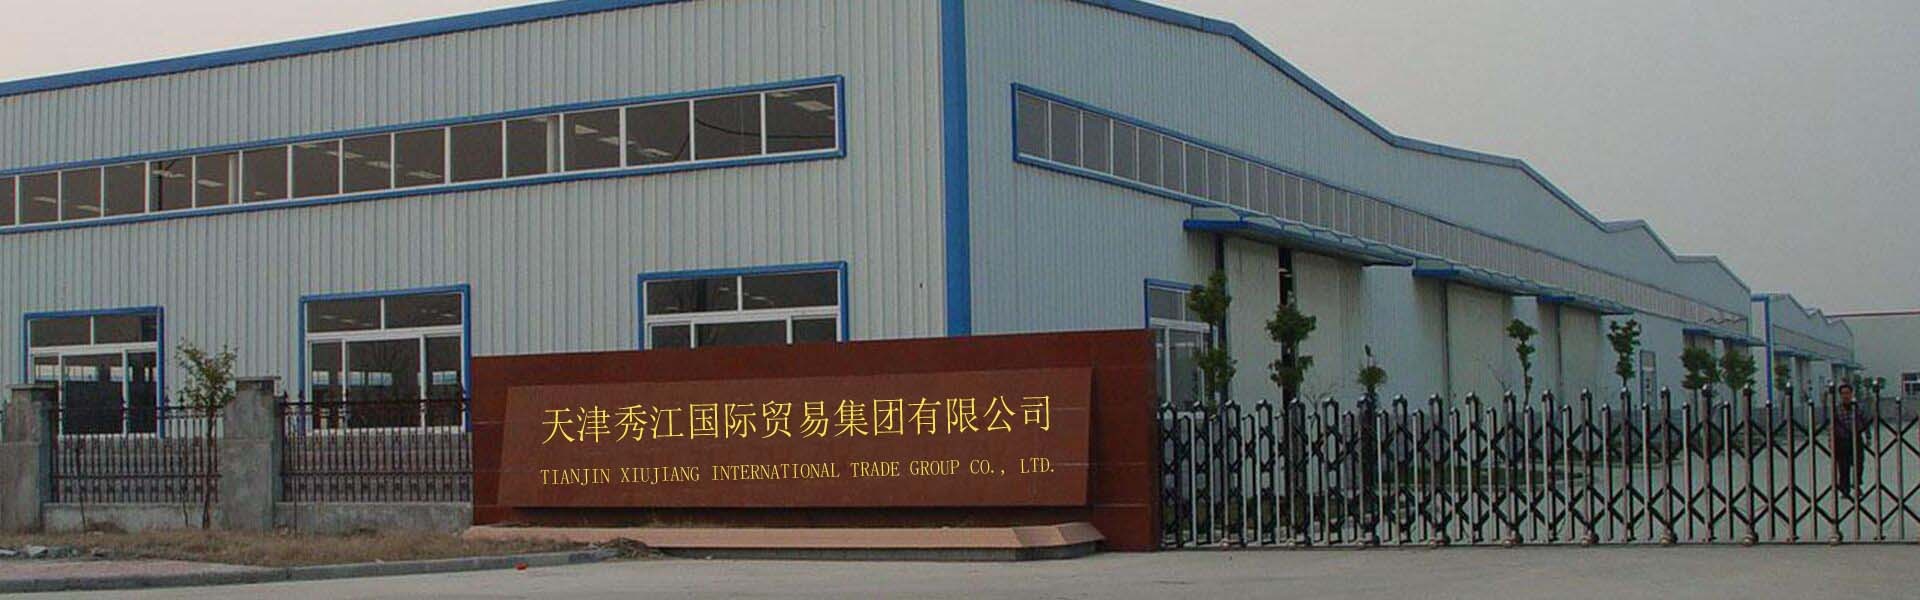 Xiujiang Group офис.jpg